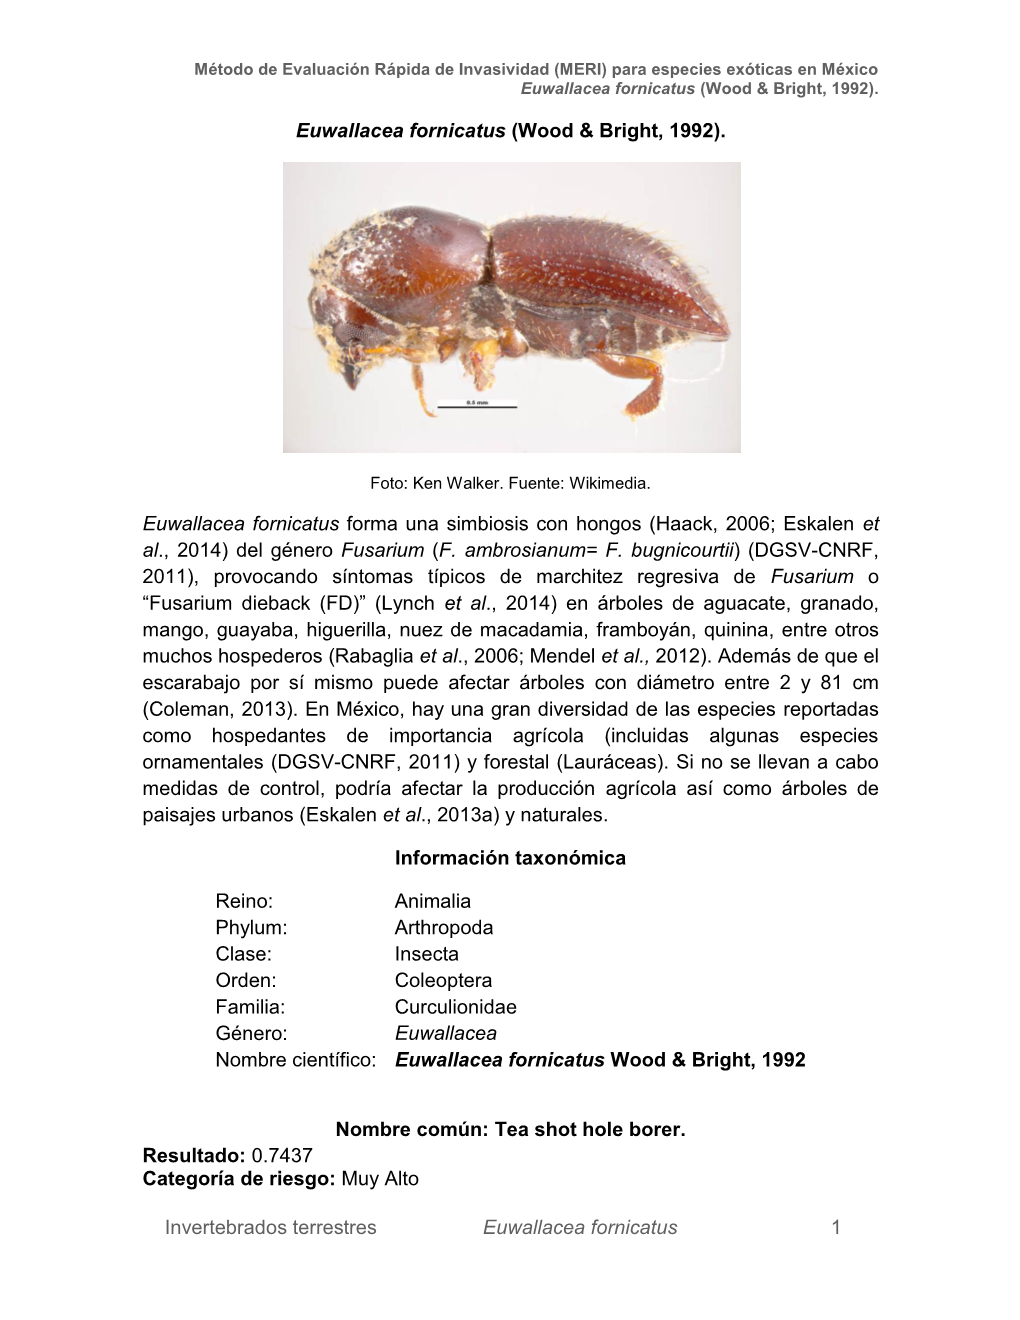 Invertebrados Terrestres Euwallacea Fornicatus 1 Euwallacea Fornicatus (Wood & Bright, 1992). Euwallacea Fornicatus Form